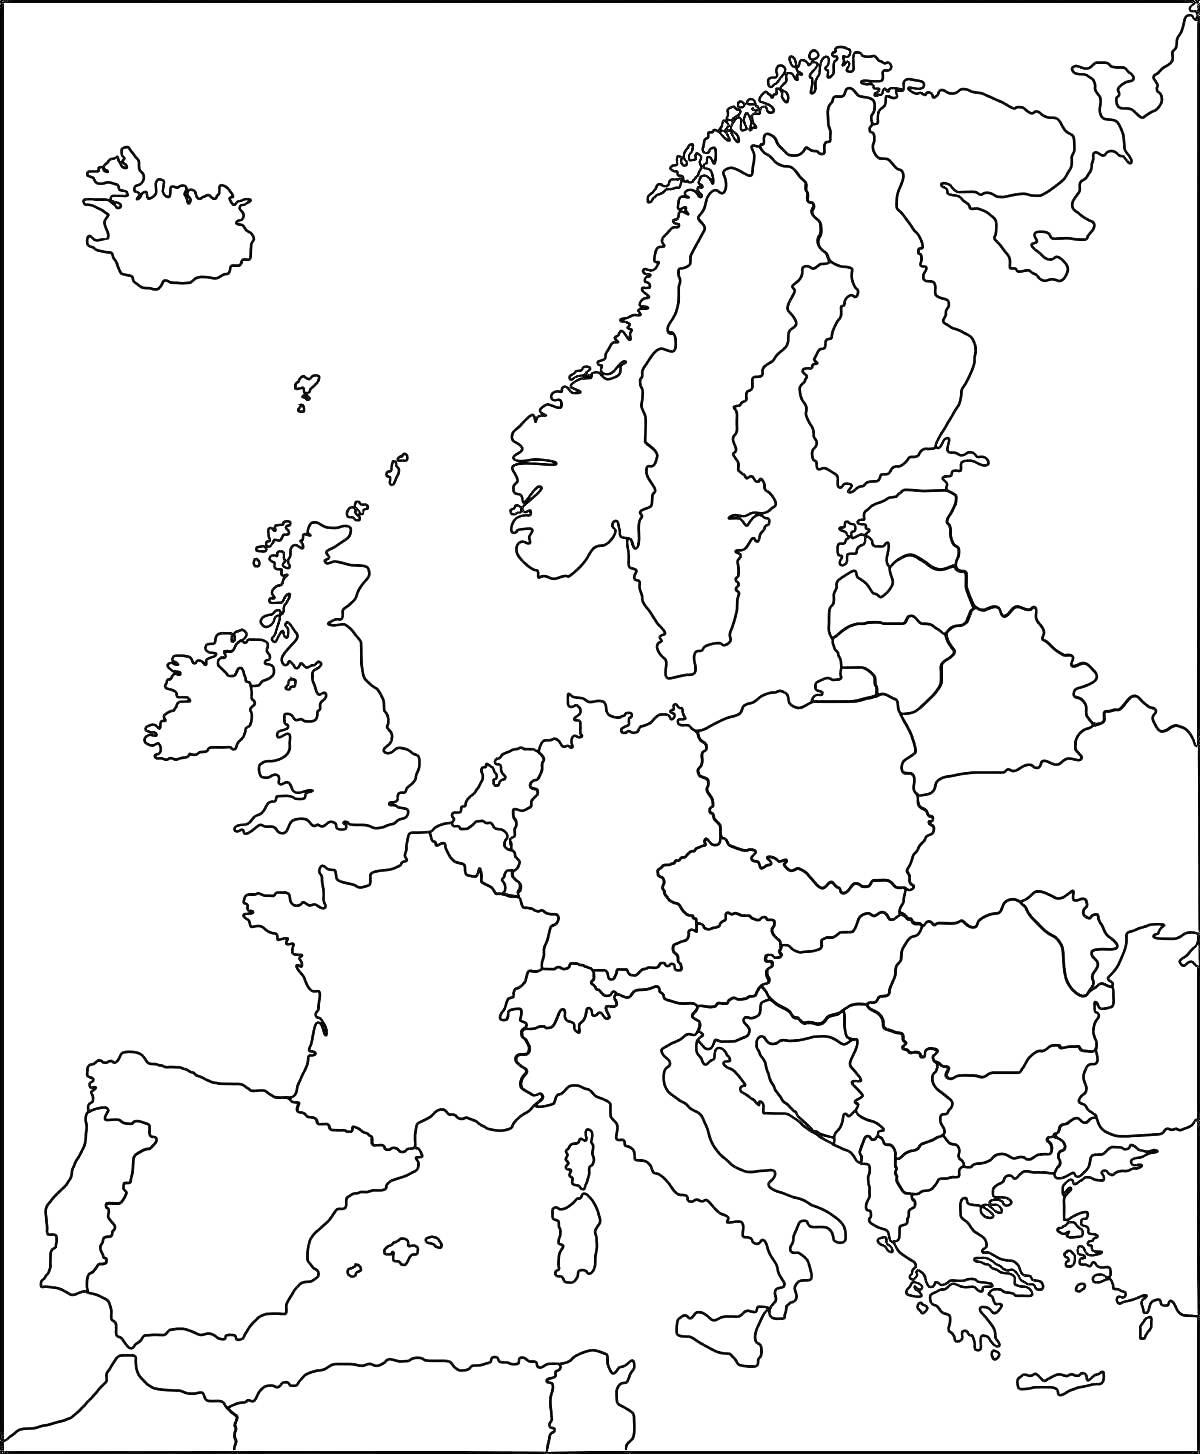 Раскраска Карта Европы для раскрашивания с контурами всех стран и островов